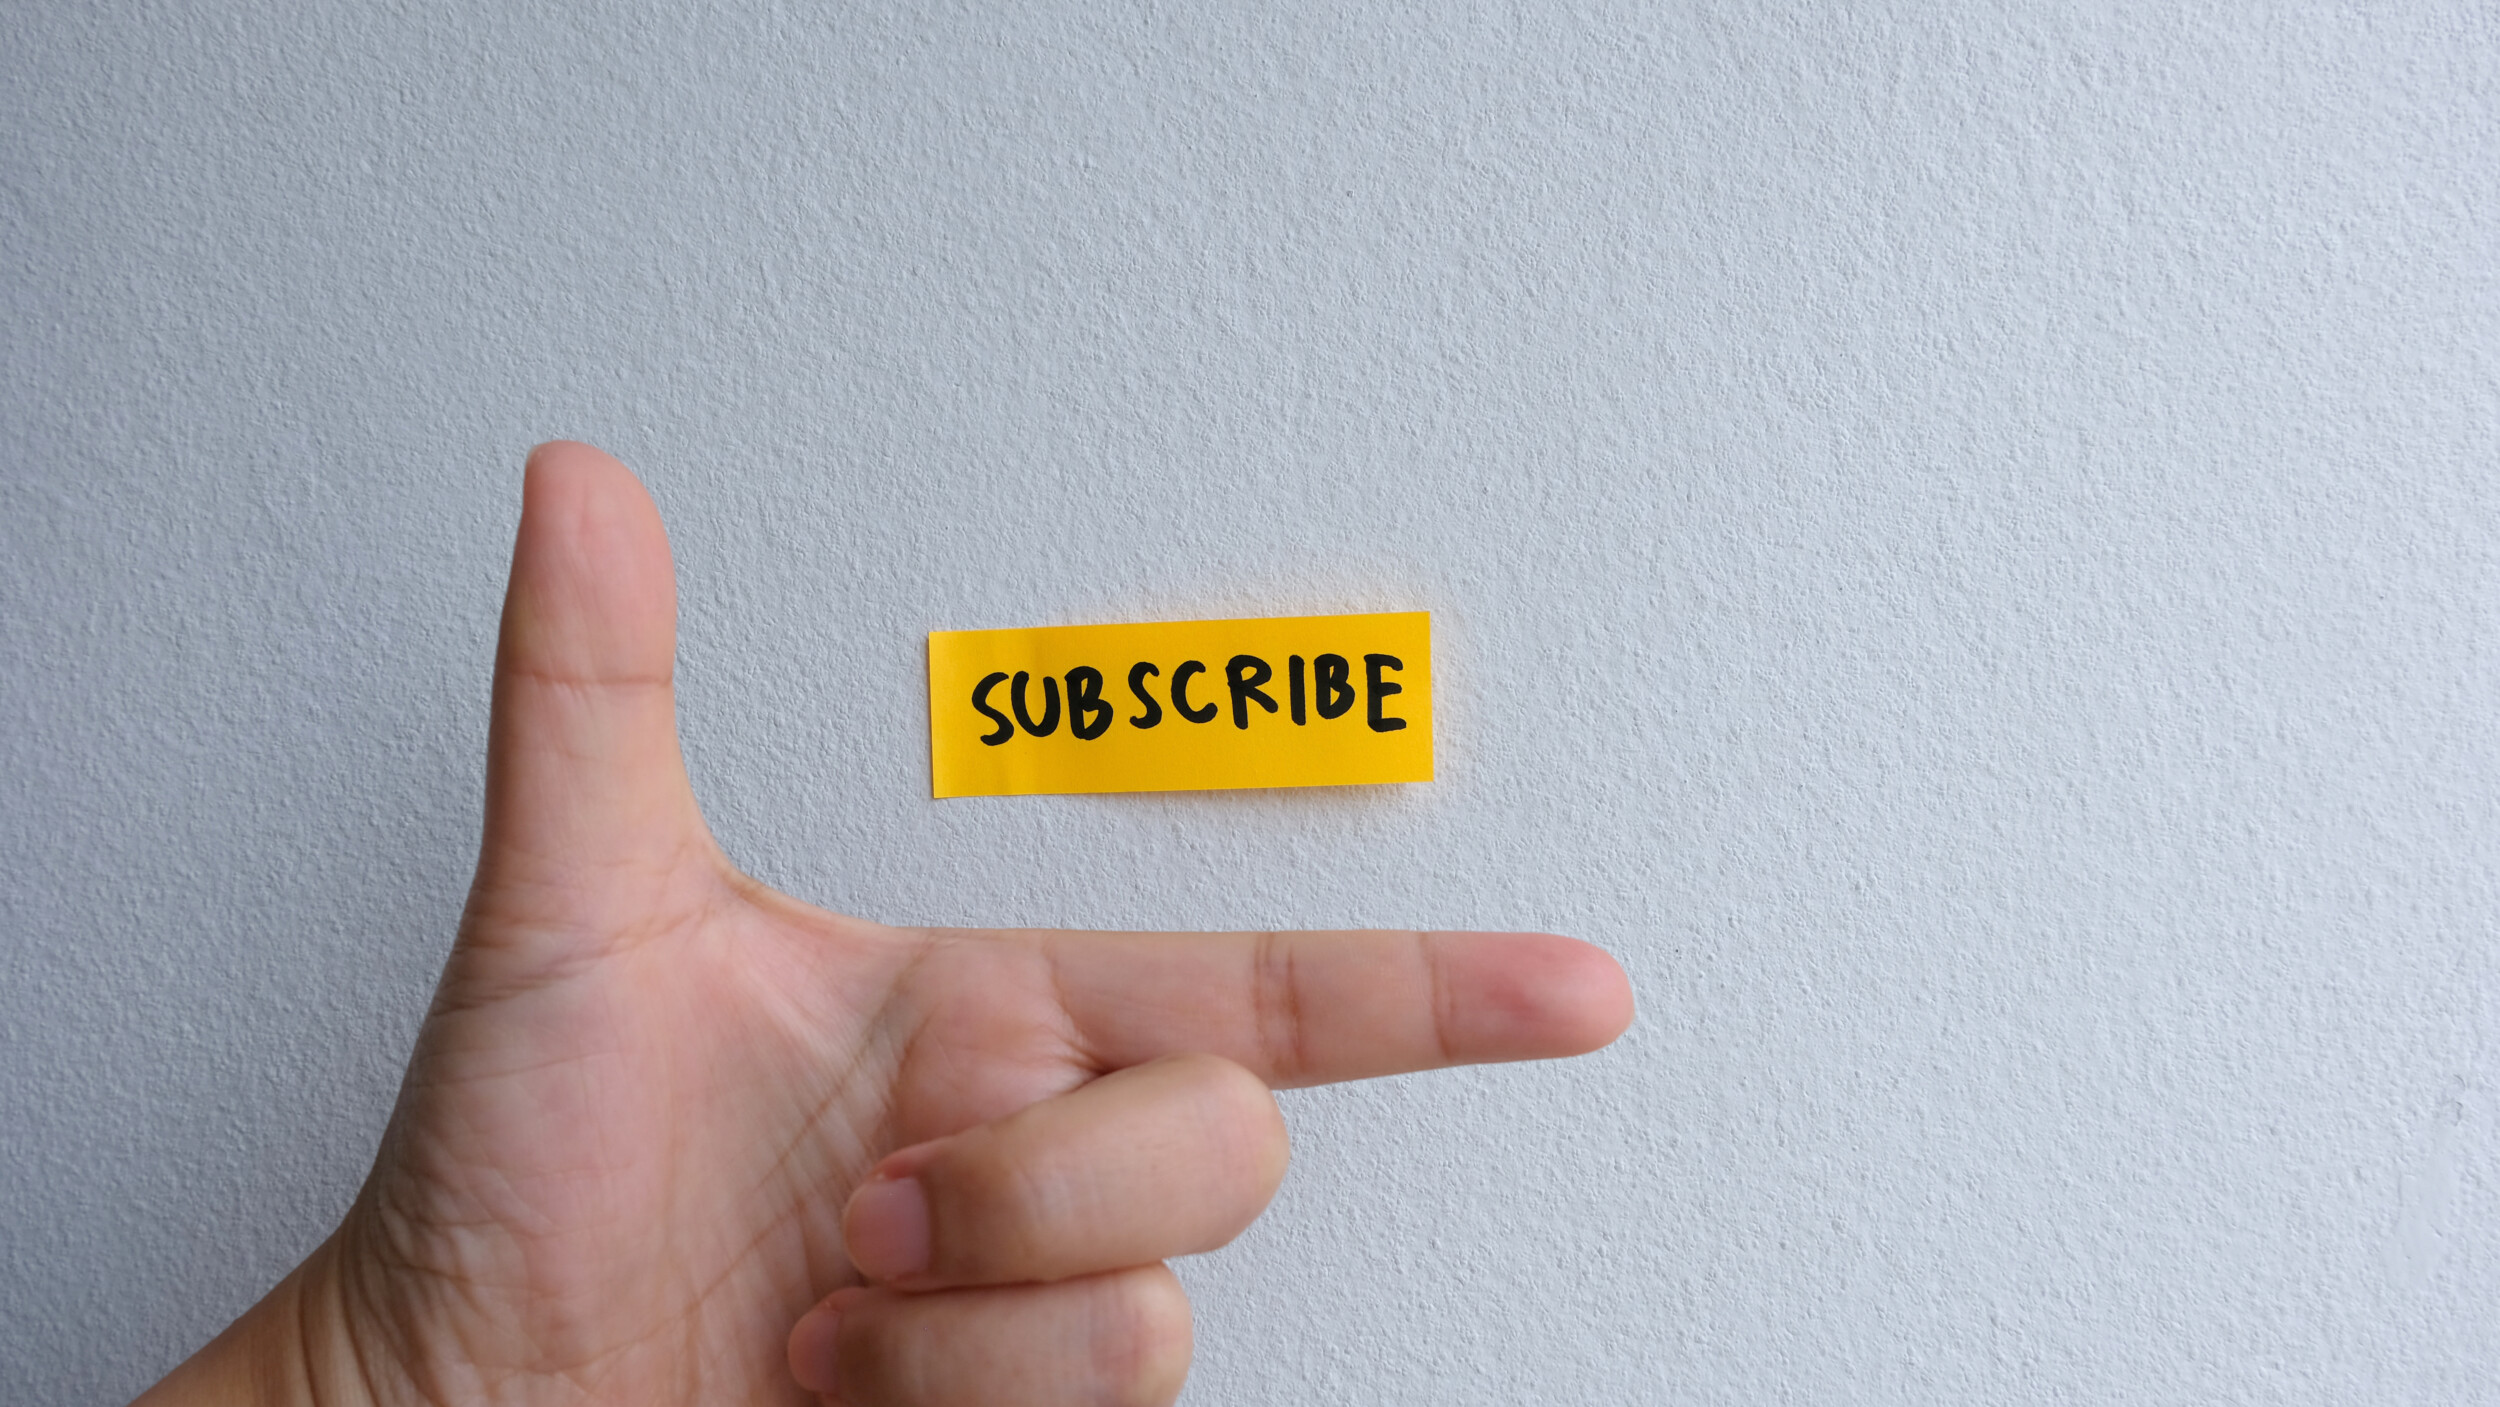 Visualisatie van een hand met een sticker erboven waarop geschreven staat: subscribe.